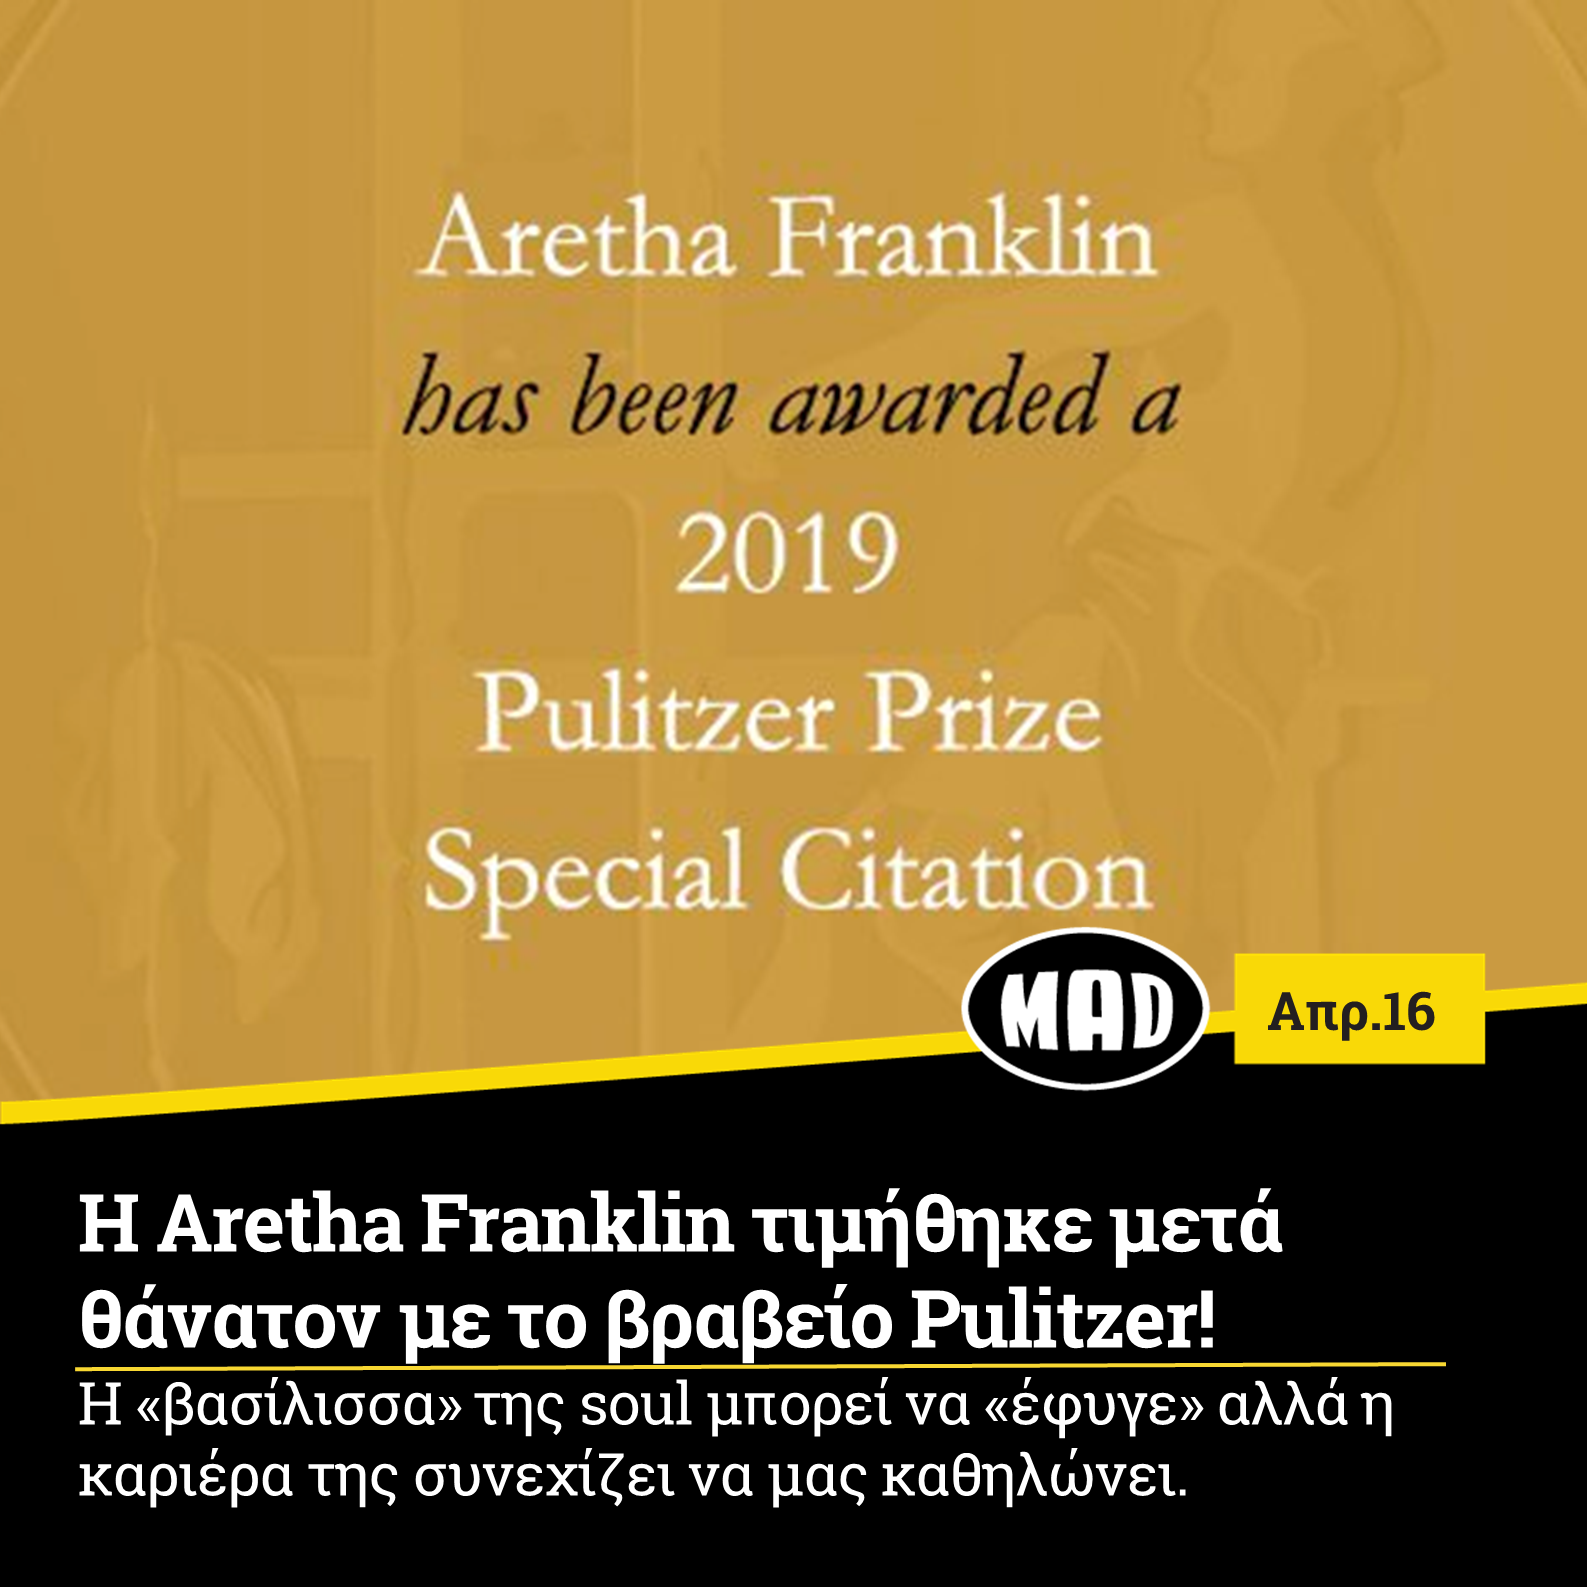 Με ένα βραβείο Pulitzer ειδικής μνείας βραβεύτηκε η σπουδαία τραγουδίστρια Aretha Franklin για την «ανεξίτηλη συνεισφορά της στην αμερικανική μουσική και τον πολιτισμό για περισσότερες από πέντε δεκαετίες». Πρόκειται για την 12η μουσικό και την πρώτη γυναίκα που τιμάται με το συγκεκριμένο βραβείο.  Η σπουδαία φωνή της soul που απεβίωσε σε ηλικία 76 ετών τον περασμένο Αύγουστο ύστερα από μάχη με τον καρκίνο στο πάγκρεας, μετράει μία καριέρα με πολλά κατορθώματα και επιτυχίες.  Με 18 βραβεία Grammy συγκαταλέγεται στην δεύτερη θέση με τις γυναίκες με τα περισσότερα βραβεία στην ιστορία του θεσμού. Το γνωστό περιοδικό Rolling Stone έχει χαρακτηρίσει την Franklin ως την σπουδαιότερη τραγουδίστρια όλων των εποχών αφού τραγούδια της όπως το Respect, το Chain Of Fools και το(You Make Me Feel Like) A Natural Woman έχουν μείνει αναλλοίωτα στο χρόνο αποδεικνύοντας την ύψιστη καλλιτεχνική τους αξία.   Τέλος για την ιστορία να πούμε πως η Aretha Franklin υπήρξε η πρώτη γυναίκα καλλιτέχνης που συμπεριλήφθηκε στο Rock and Roll Hall of Fame(1987).